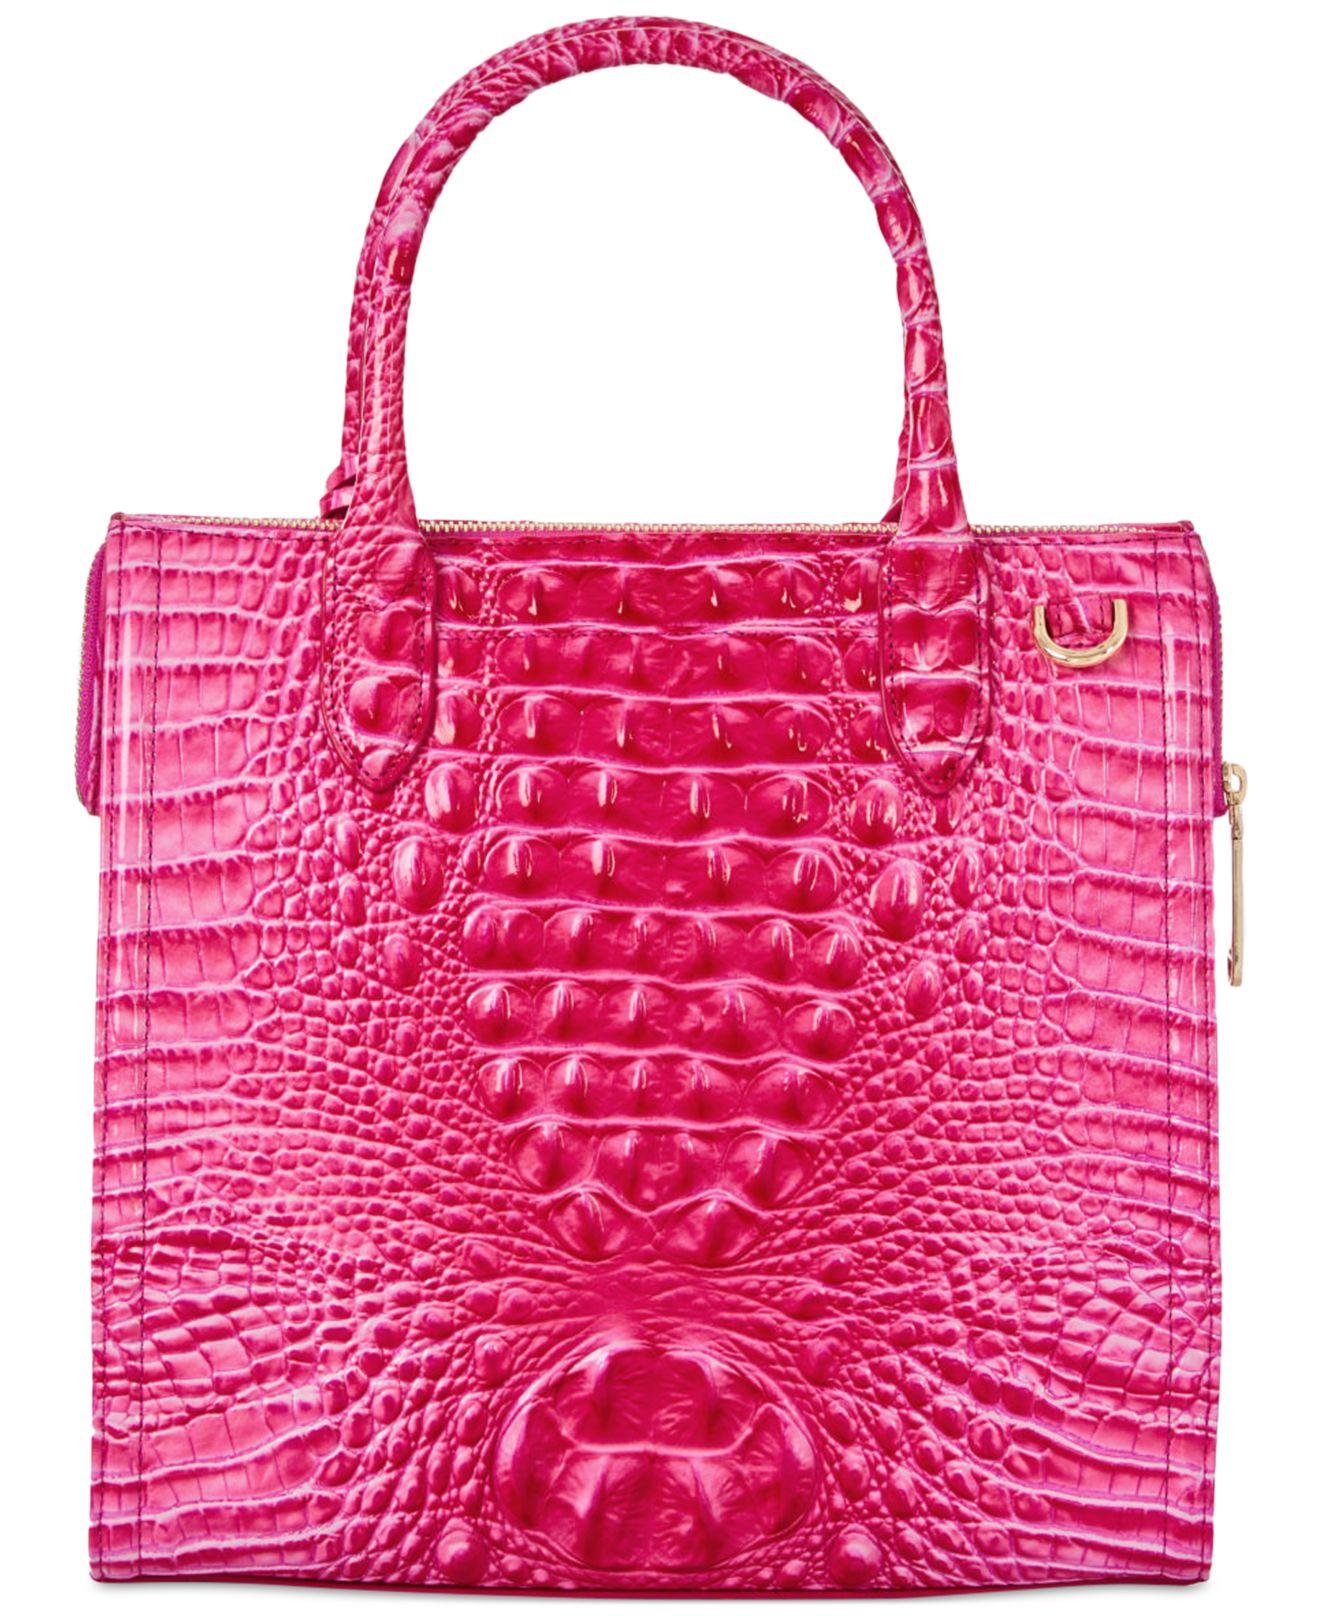 Brahmin Caroline Melbourne Embossed Leather Satchel in Pink